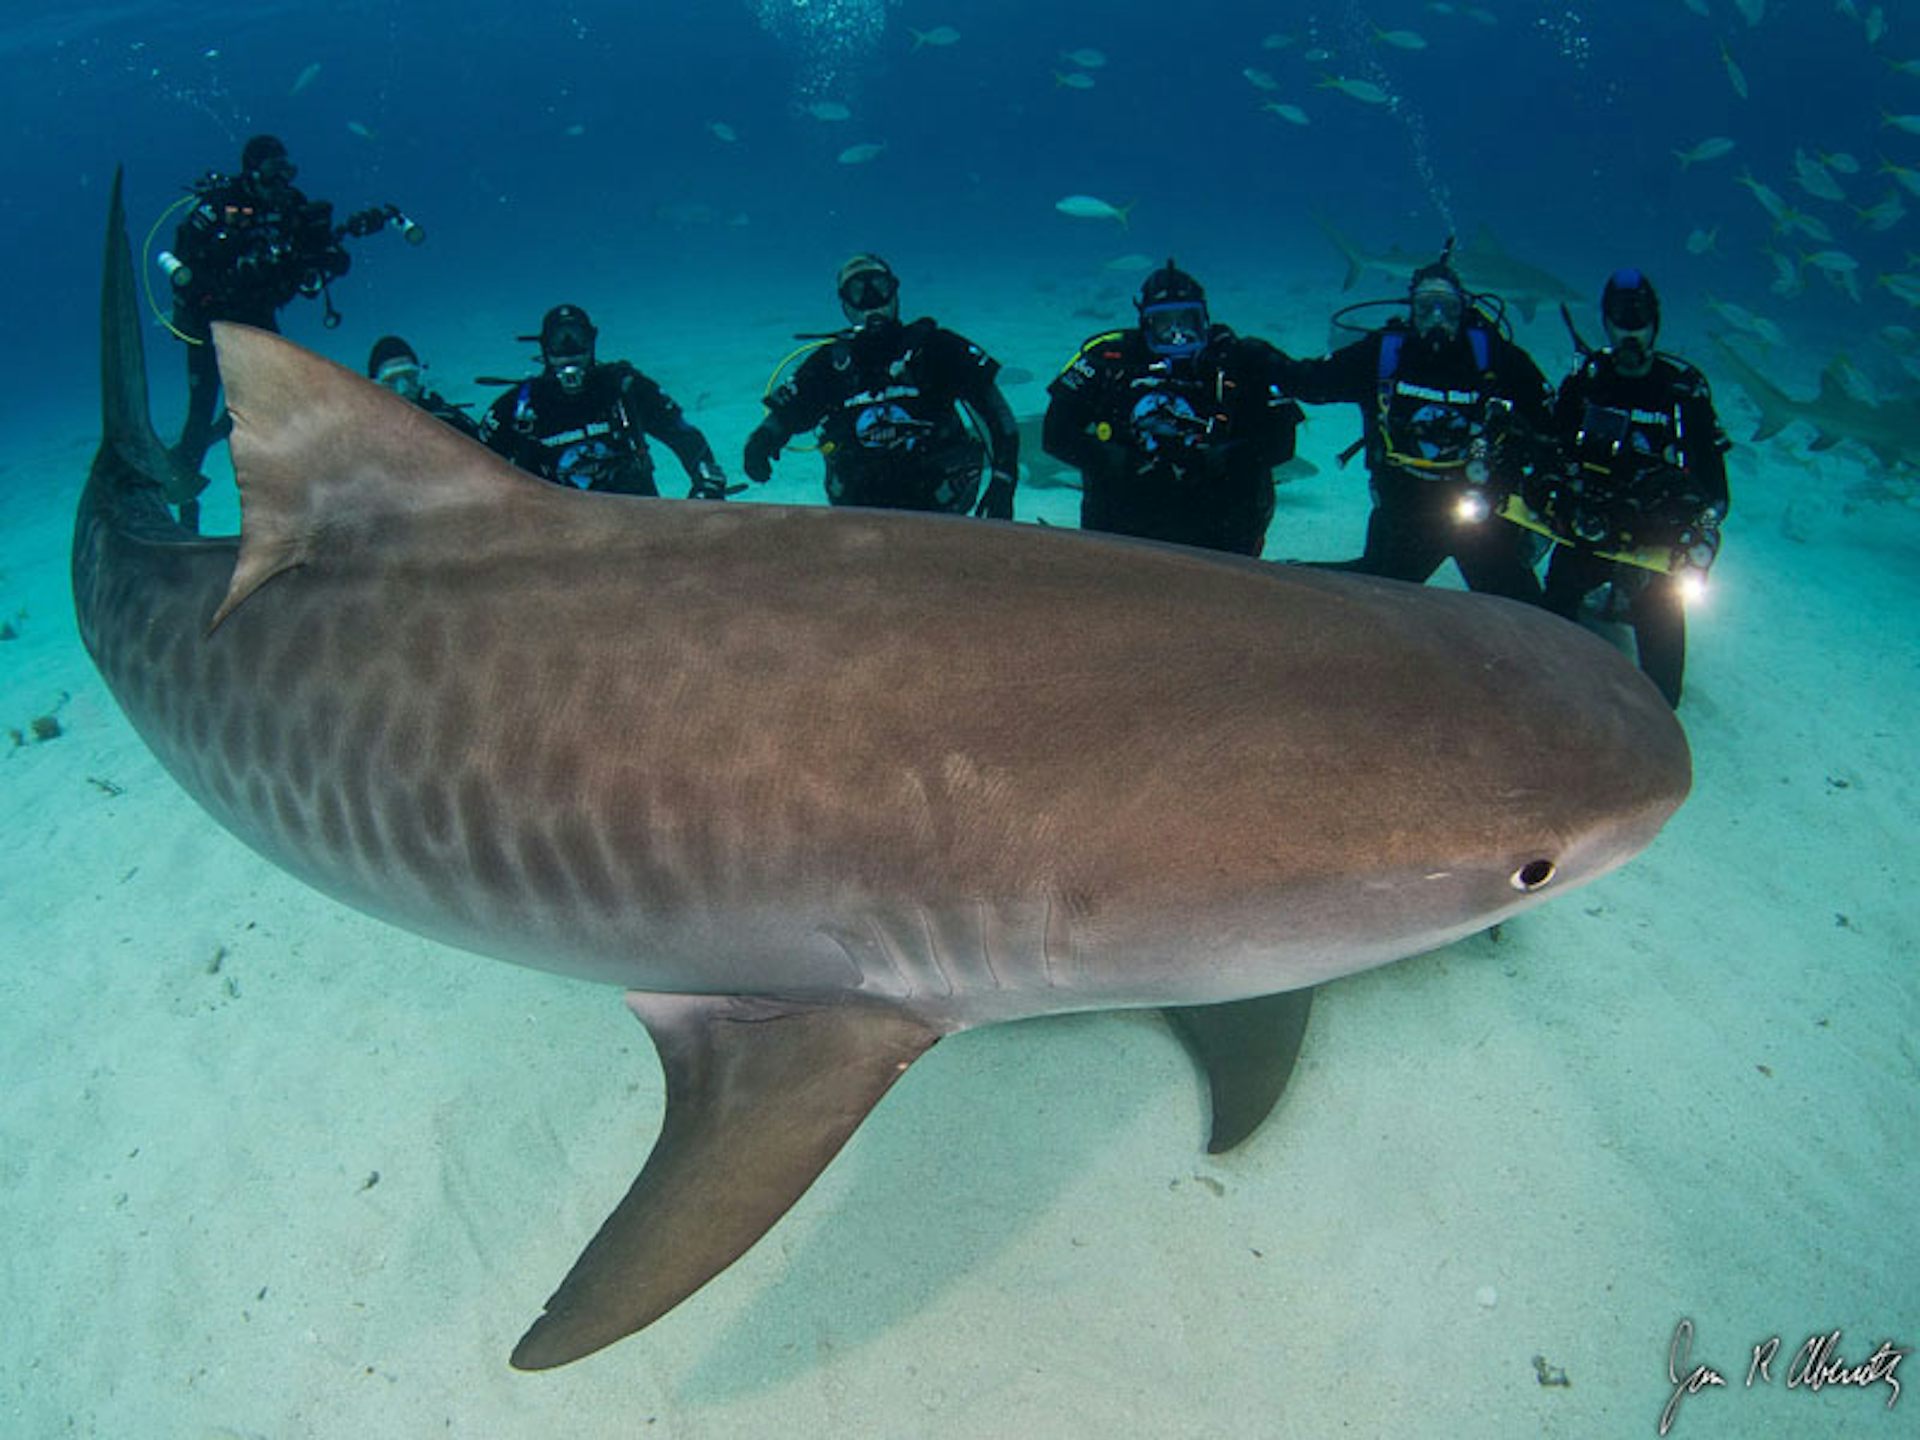 deep blue shark size and weight